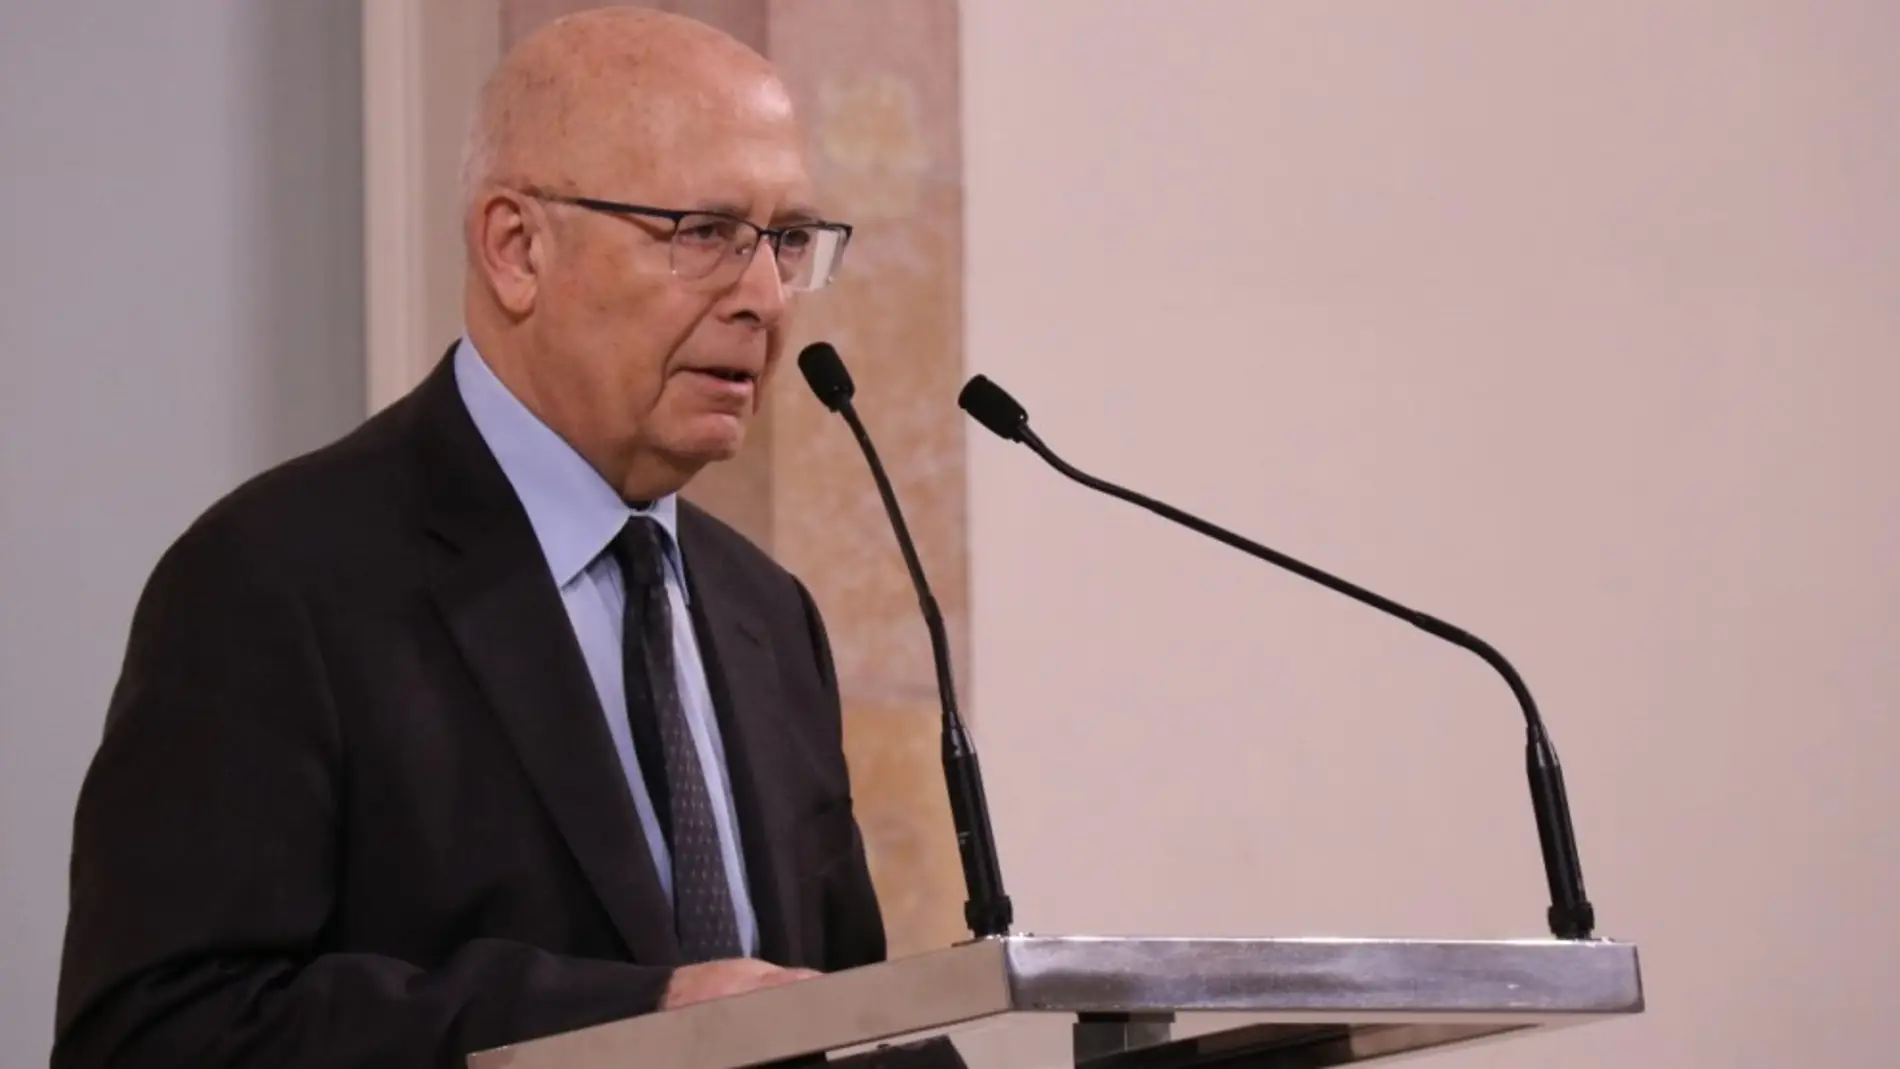 Mor l'expresident del Parlament Joan Rigol als 81 anys